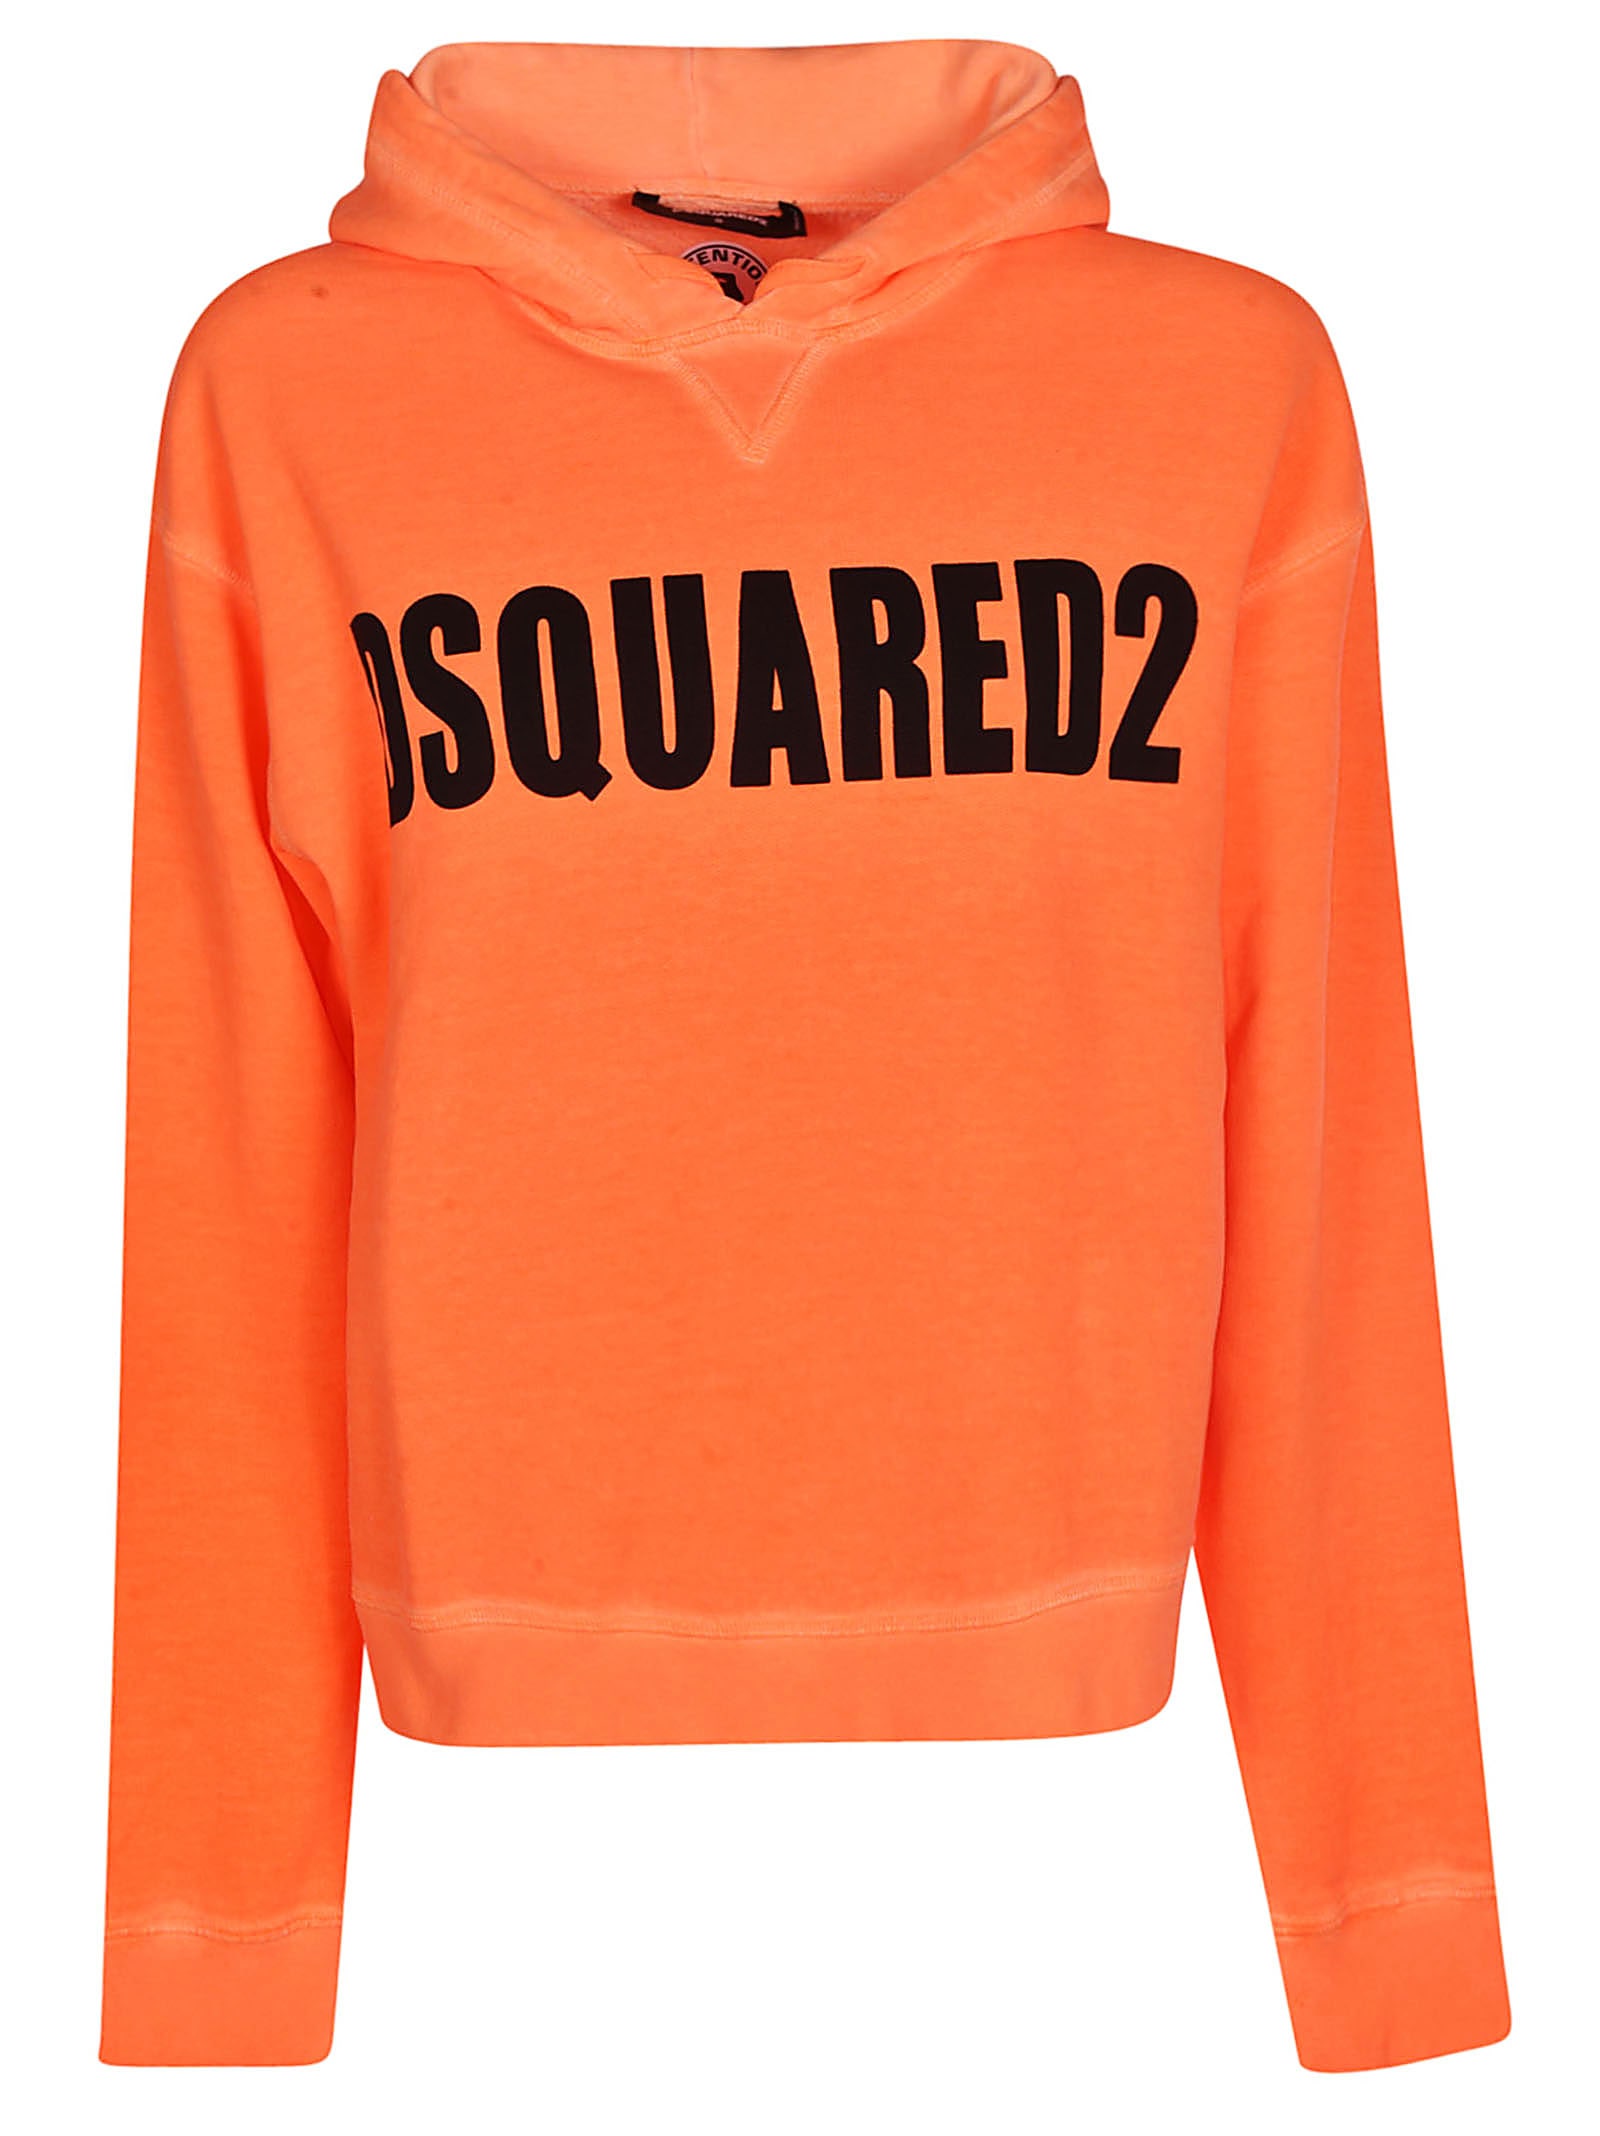 dsquared2 orange